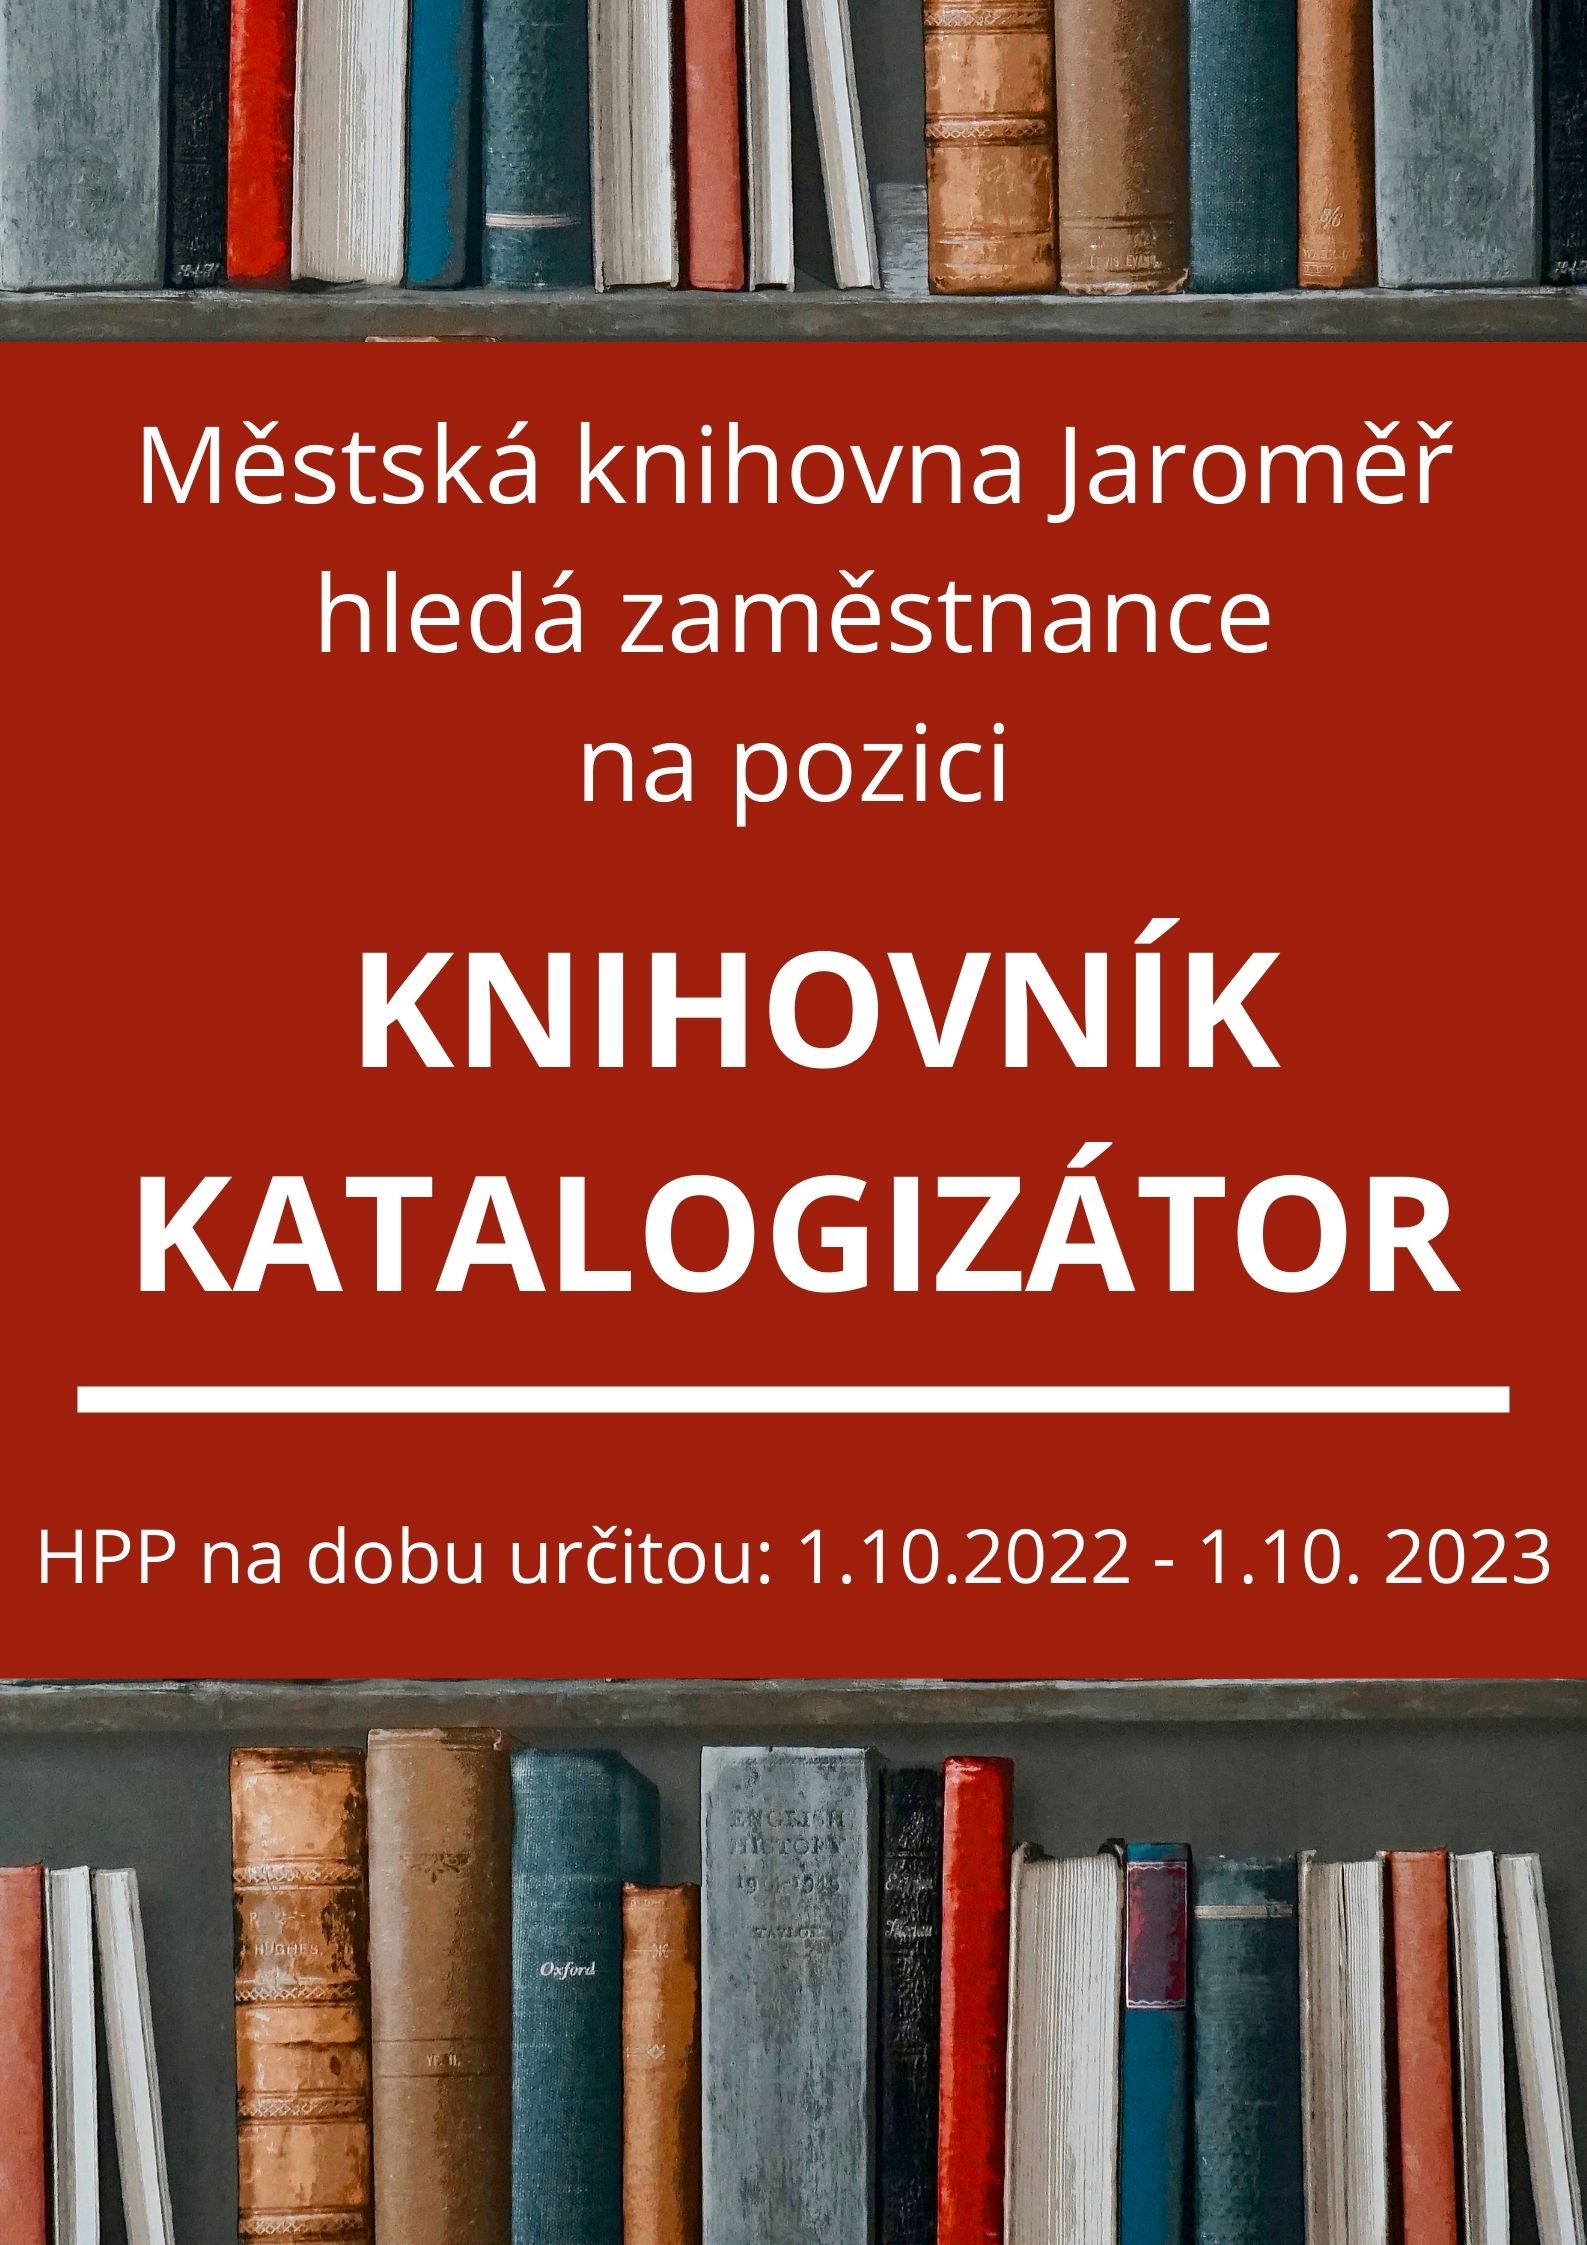 Hledáme zaměstnance na pozici knihovník katalogizátor na dobu určitou: 1.10. 2022 – 1.10. 2023 (zástup za rodičovskou dovolenou)